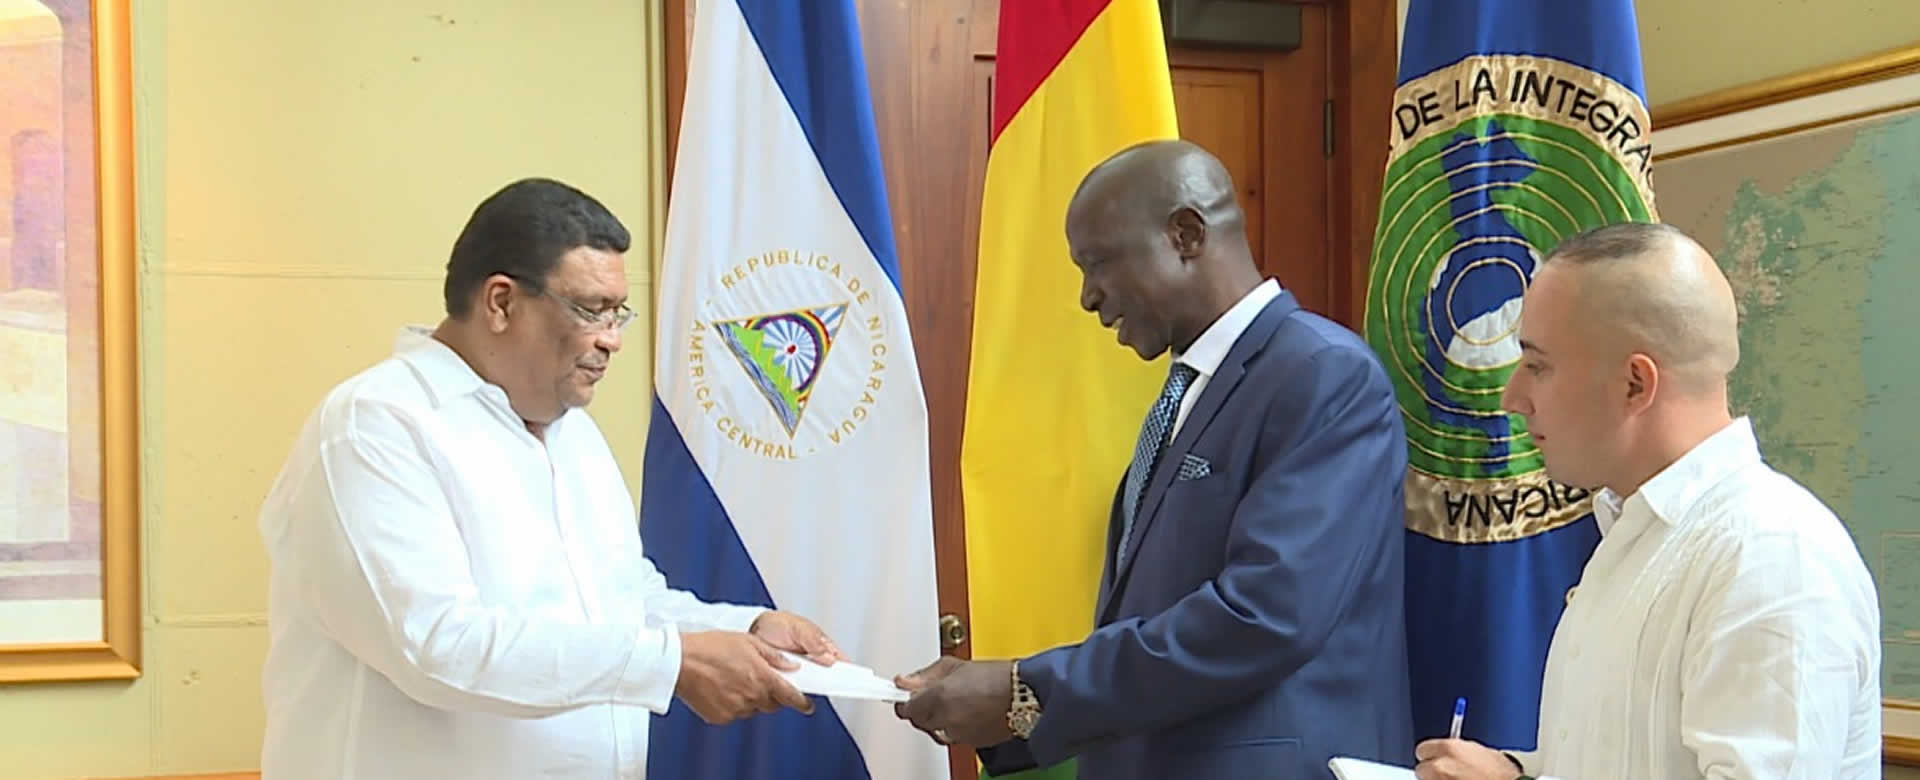 Embajadores de Belice y Guinea presentan Copias de Estilos